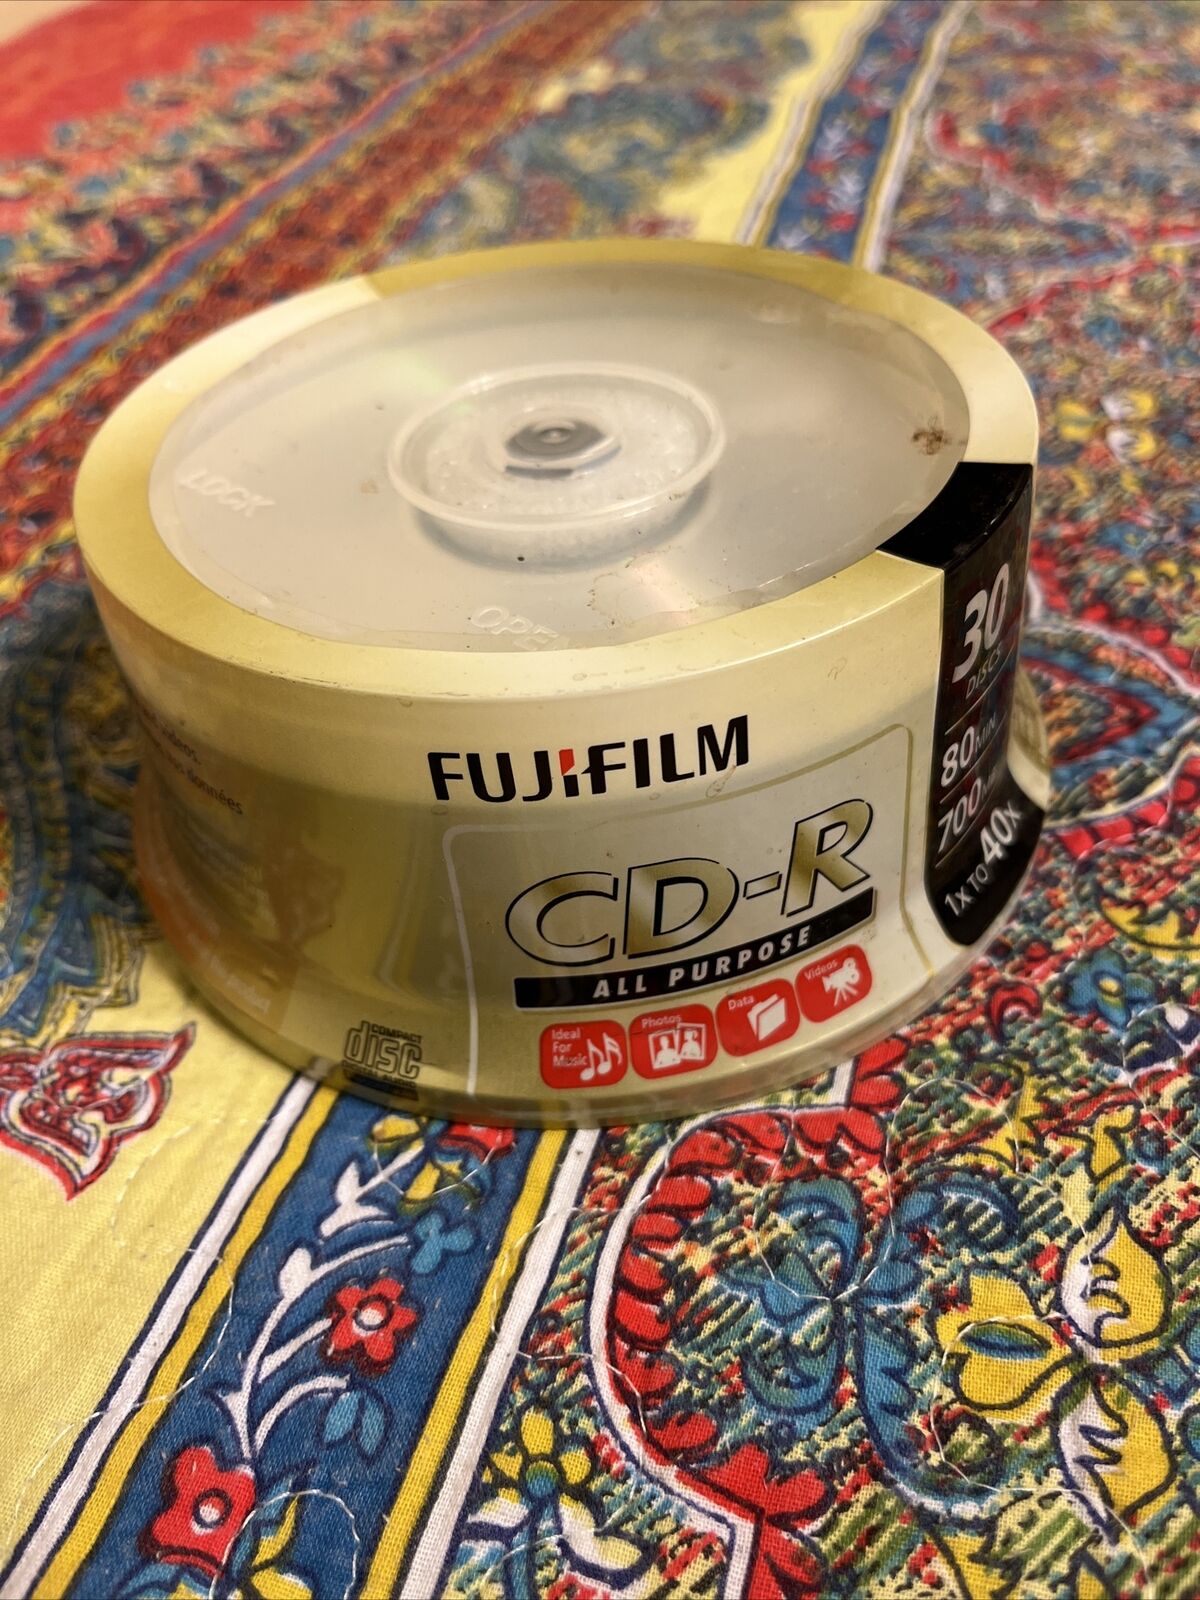 ❤️ Fujifilm Cd-r 30discs - 80min / 700mb / 1x To 40x